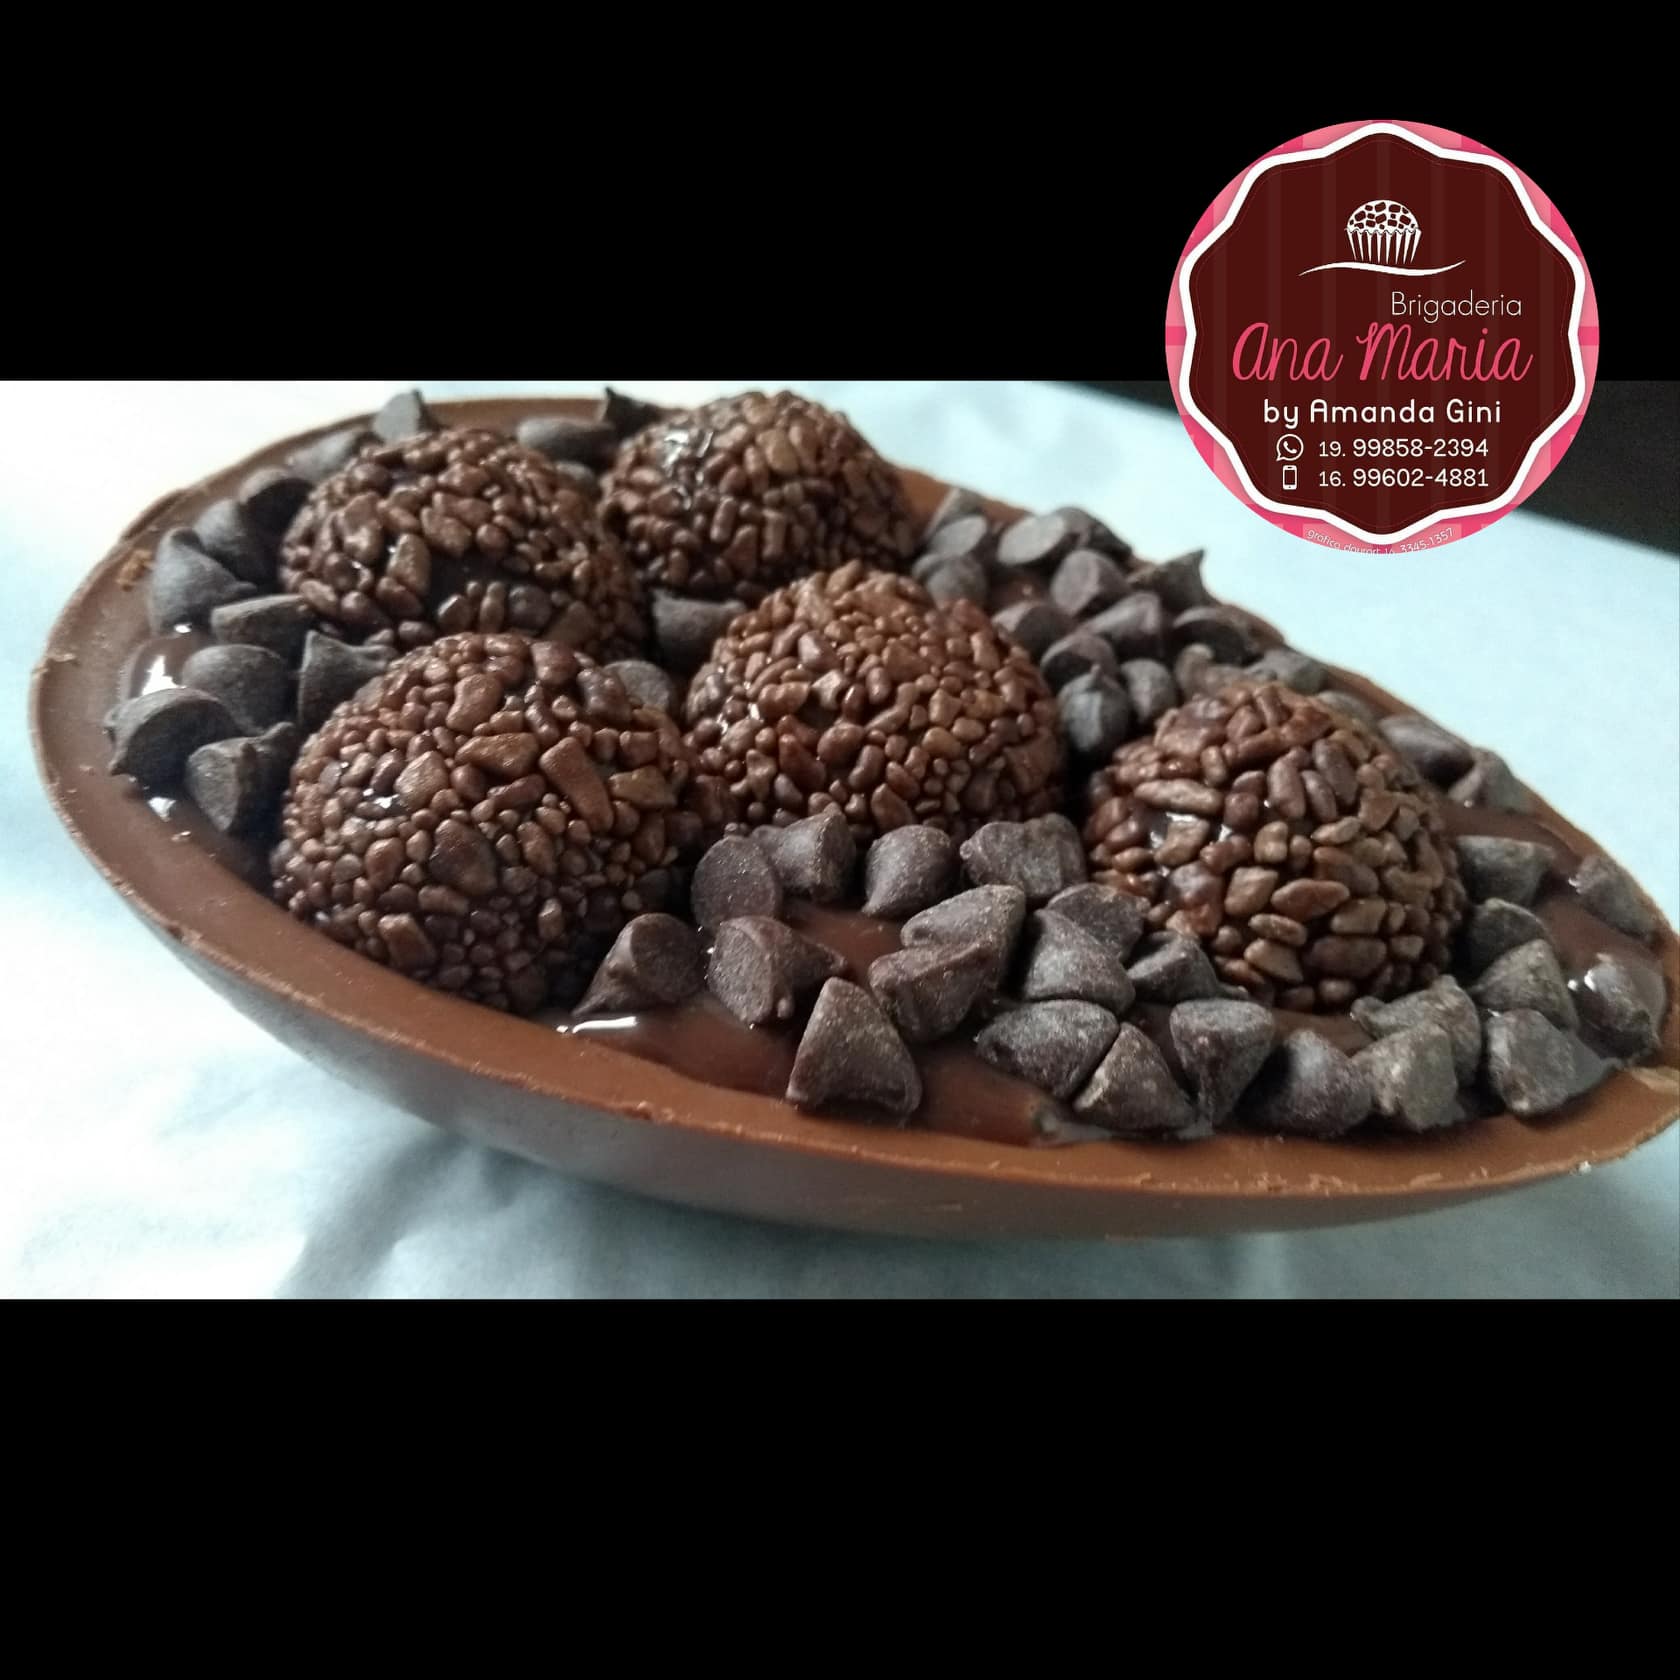 Brigaderia Ana Maria inova com “Ovos de chocolate de colher”